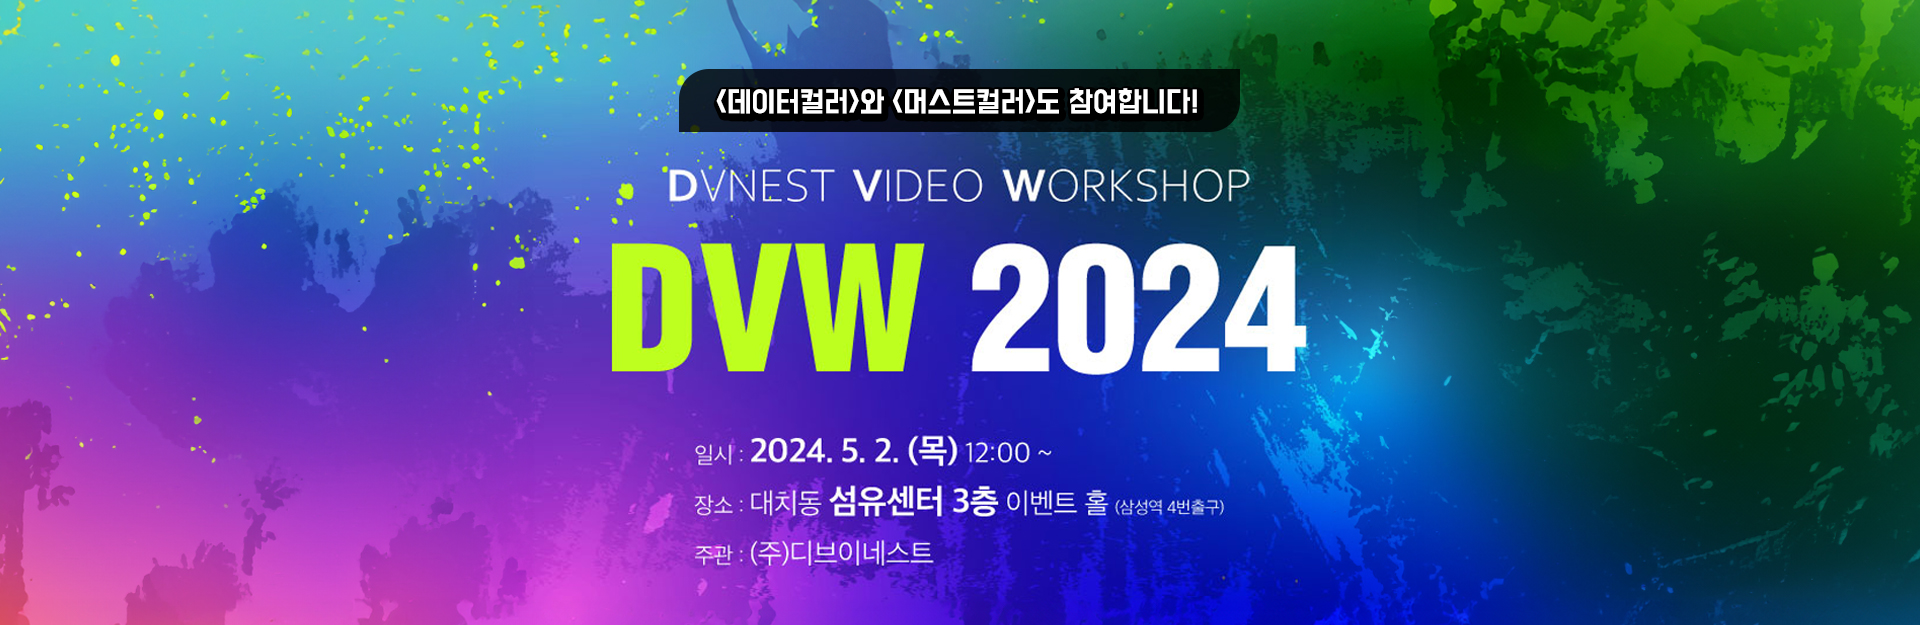 DVW 2024